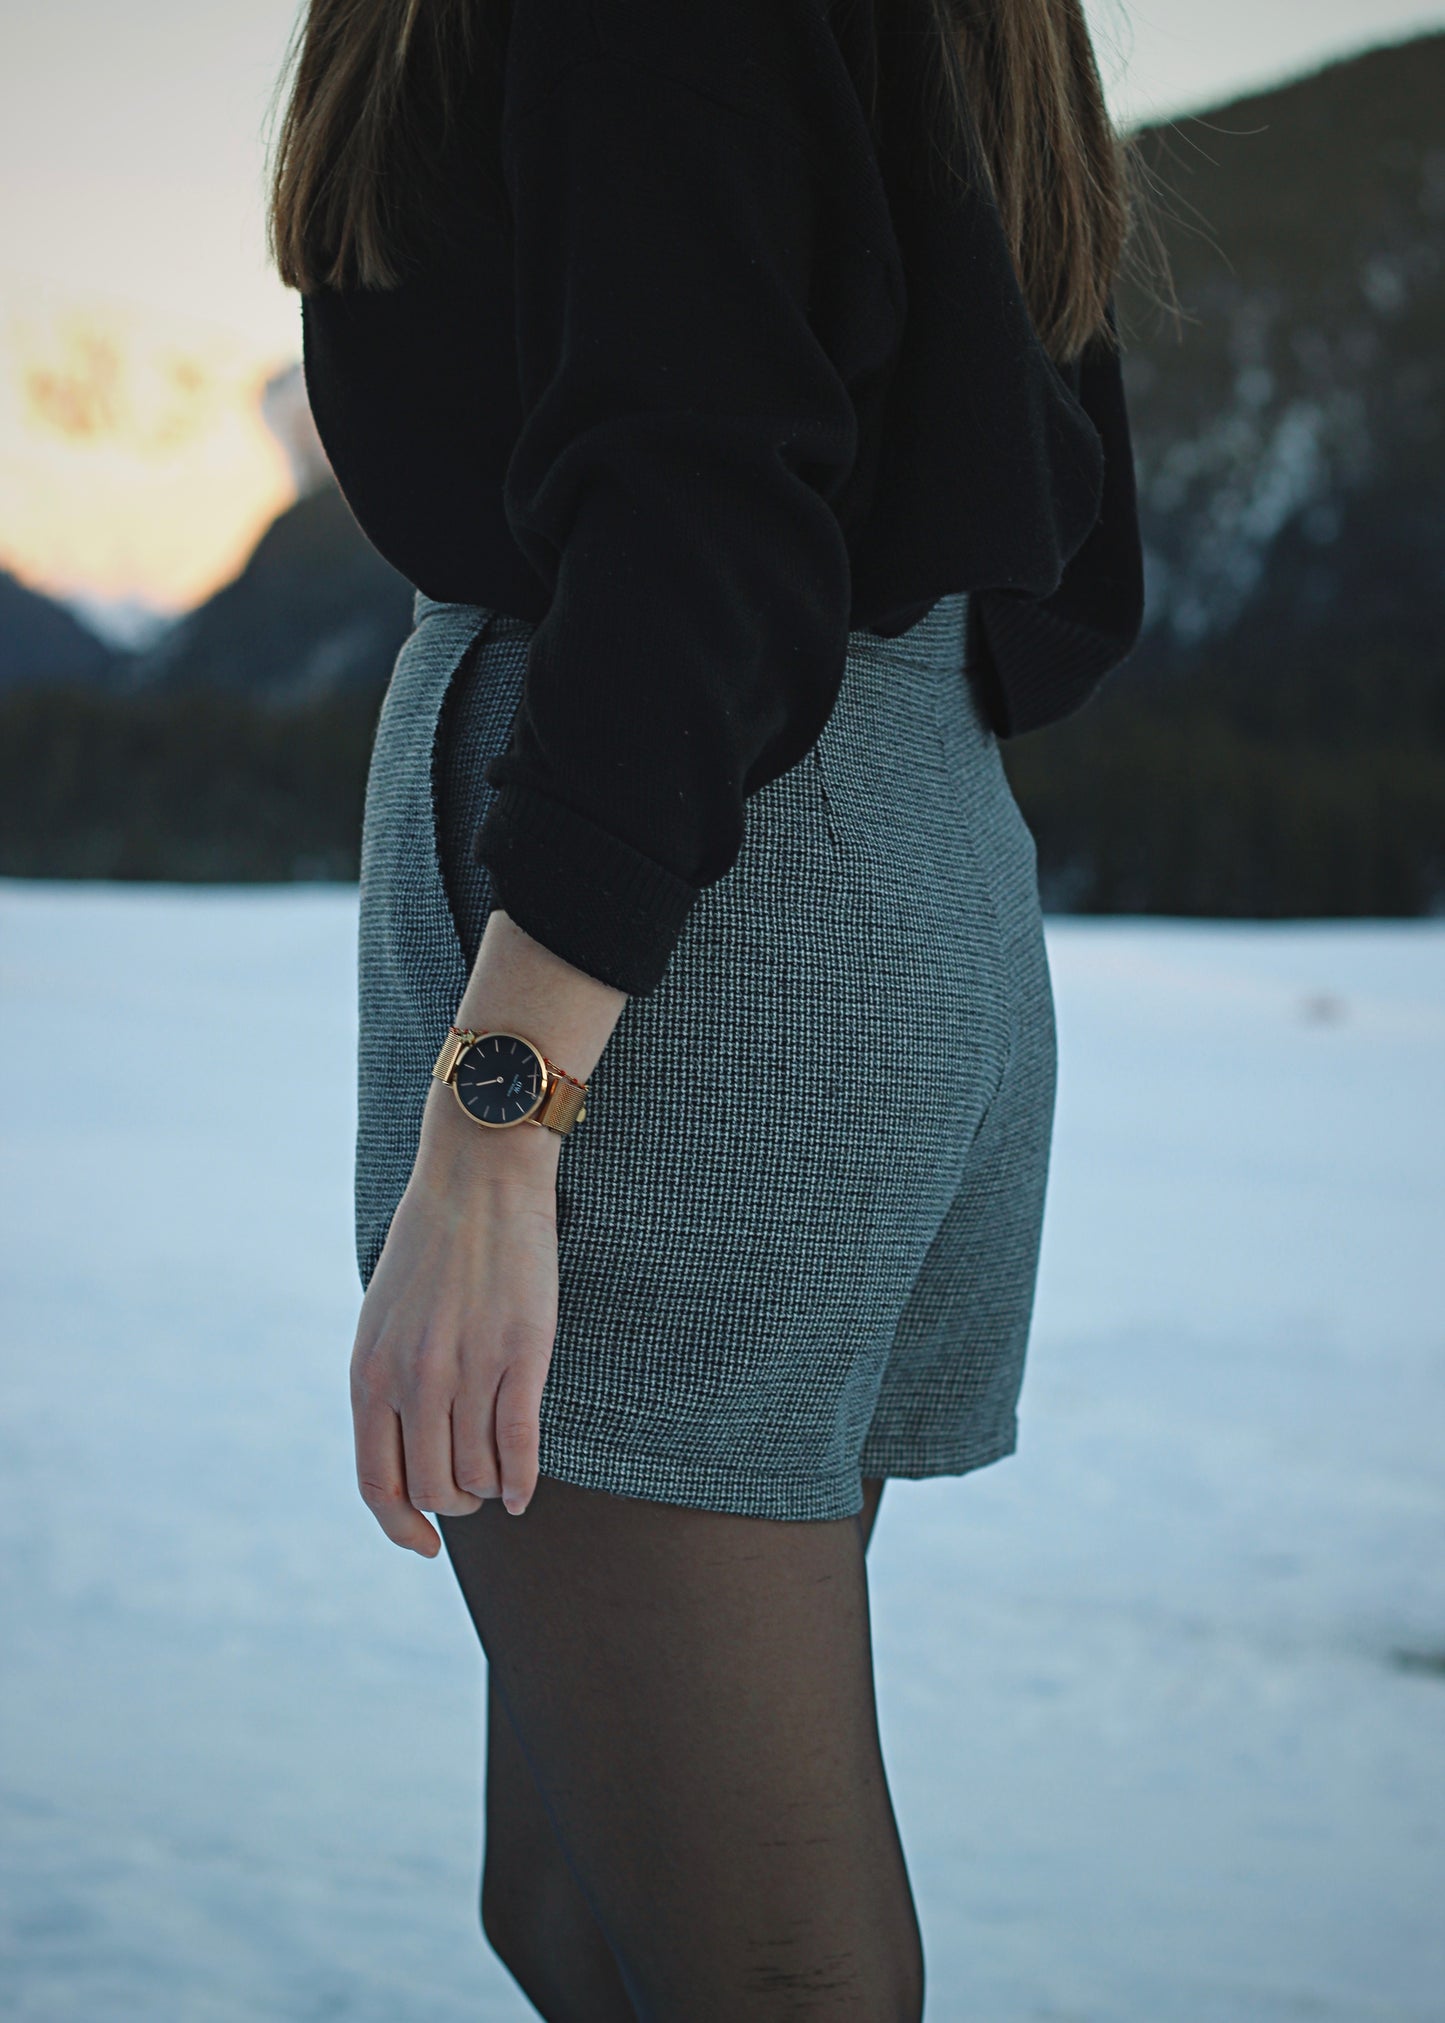 Jupe-short dans la neige, ambiance hivernale au soleil couchant, zoom sur la jupe de 3/4 dos.